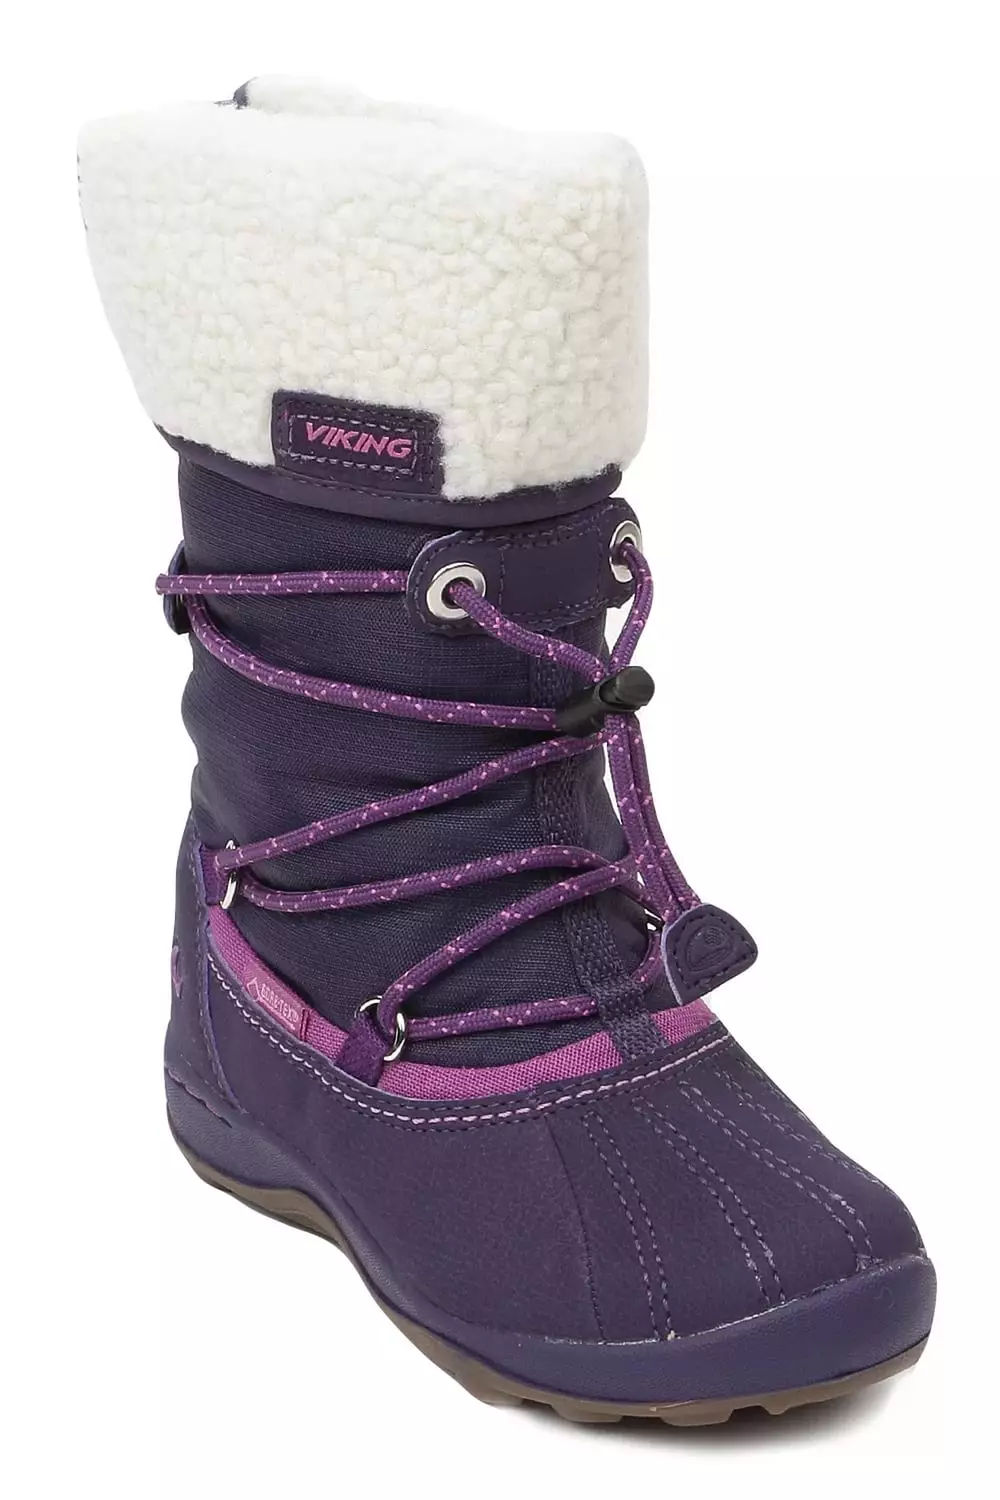 Wikigi Boots (73 사진) : 겨울 어린이 및 여성 폴리 우레탄 모델, 차원 메쉬 및 바이킹 리뷰 2258_5